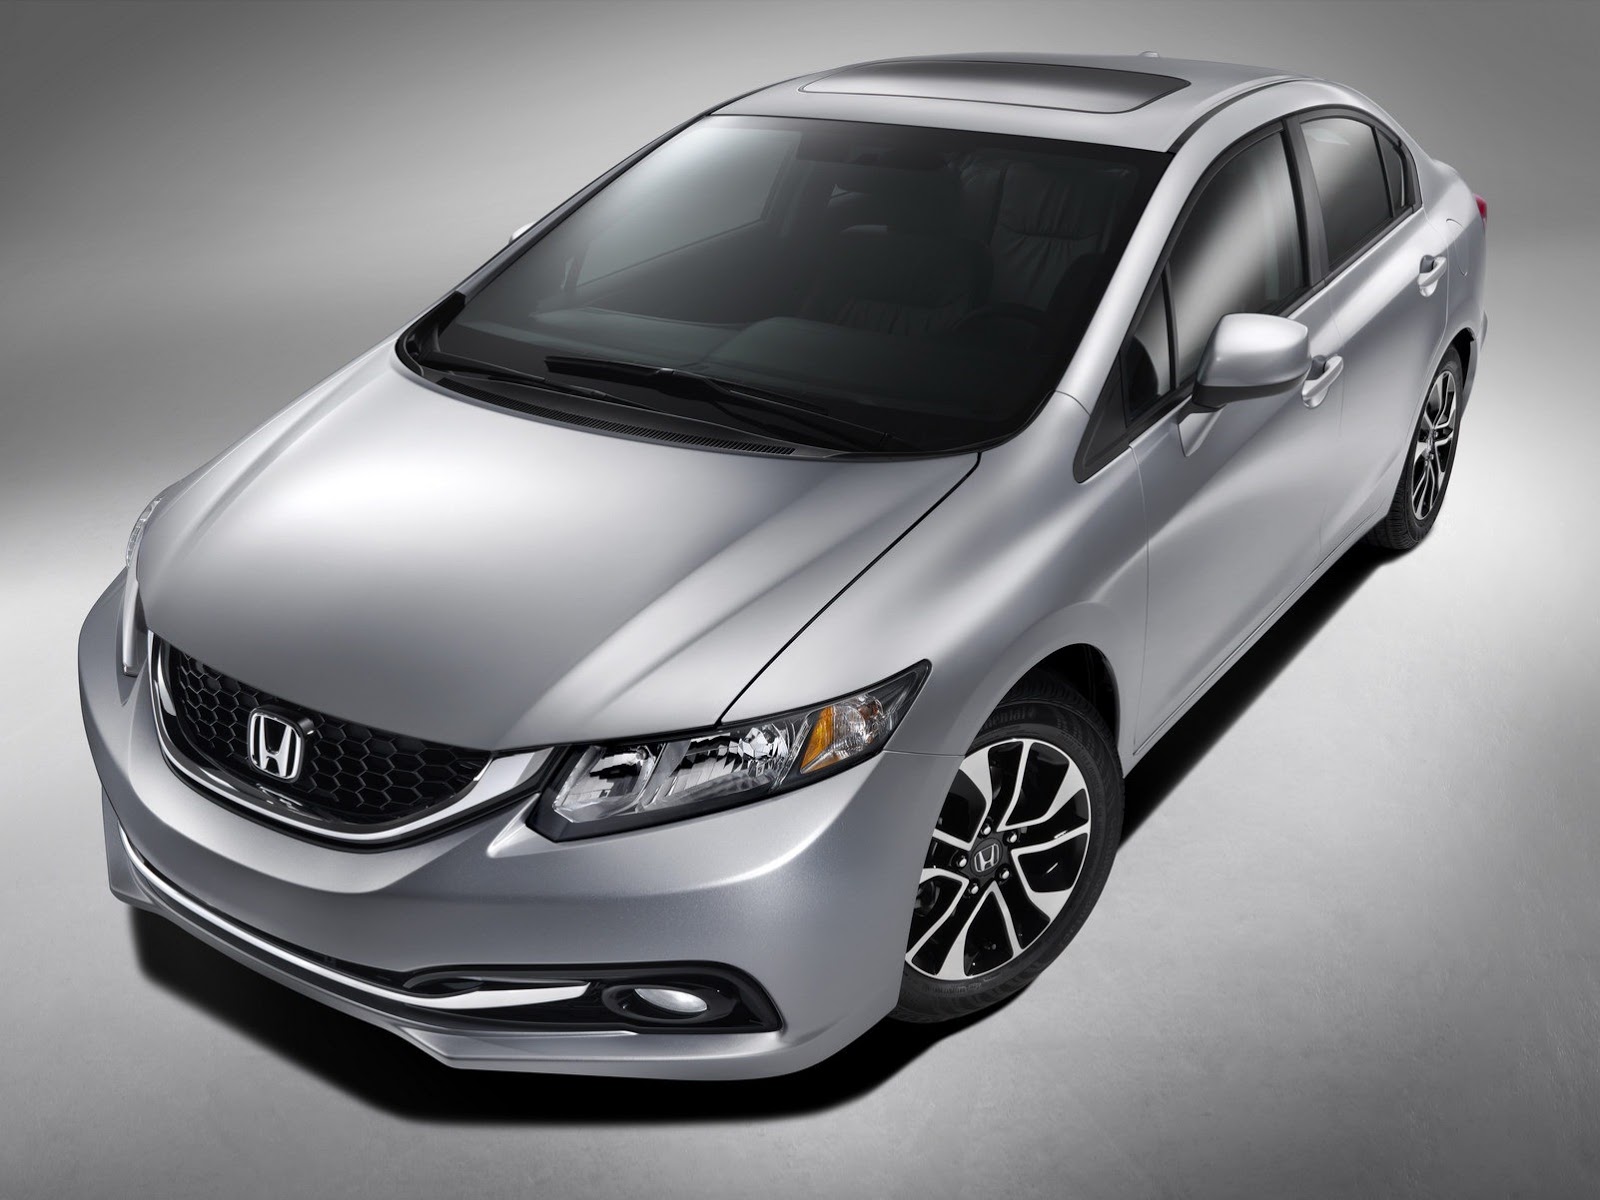 Honda Civic 2013 là một trong những mẫu ô tô giá rẻ, chất lượng tốt cho nhân viên văn phòng